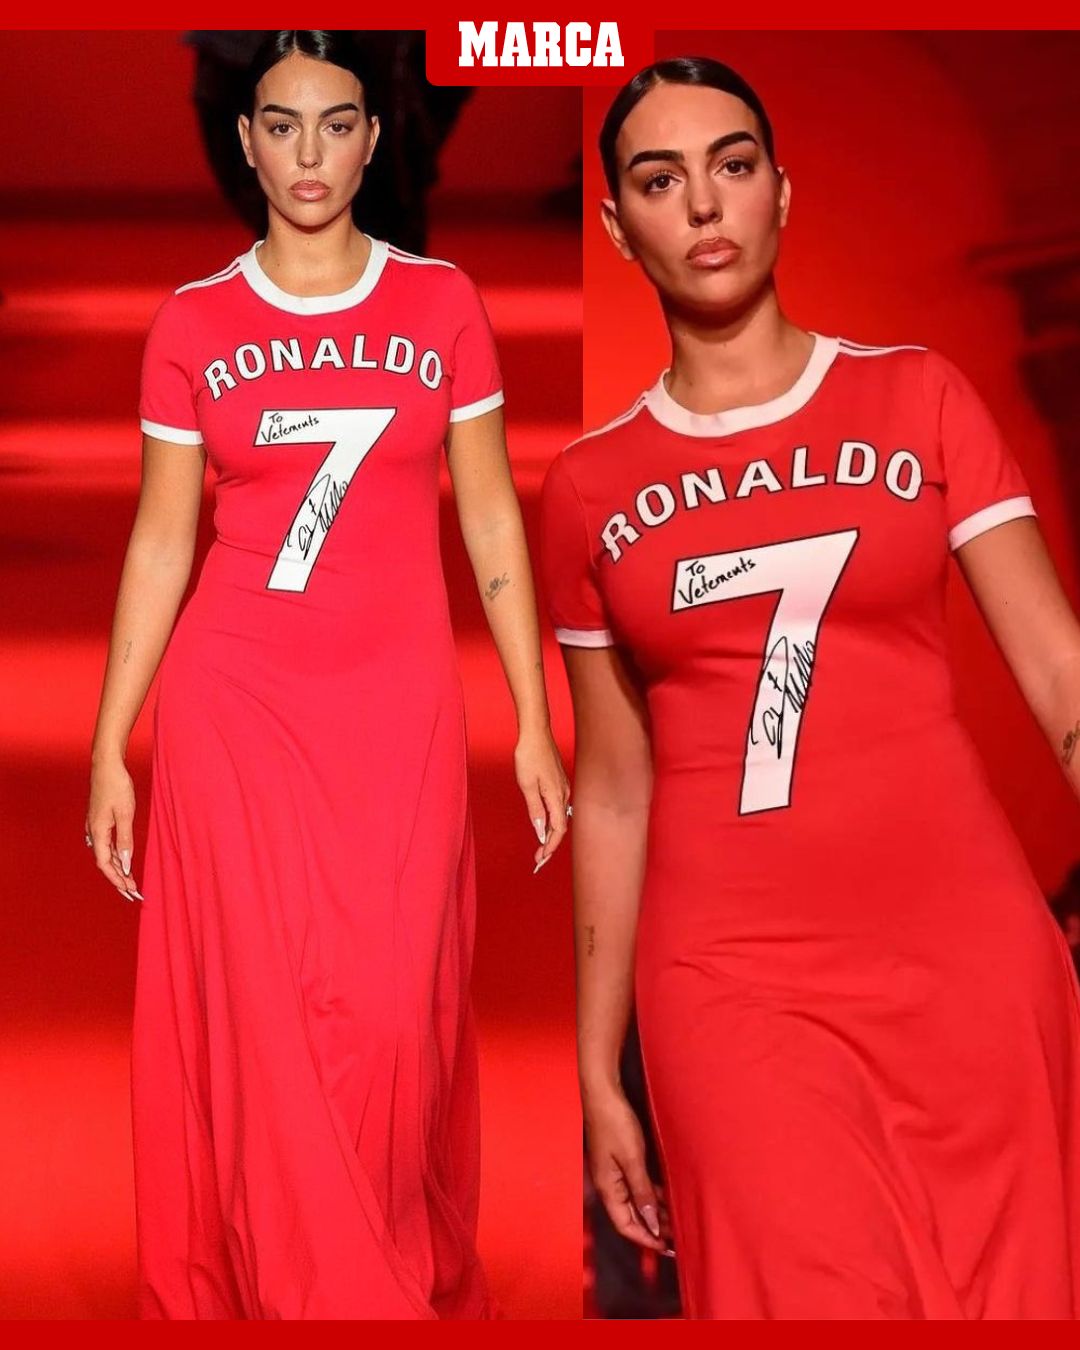 MARCA on X: "Georgina Rodríguez en la Semana de la Moda con un outfit  protagonizado por Cristiano Ronaldo 🇵🇹 https://t.co/xyFaHd83GE" / X